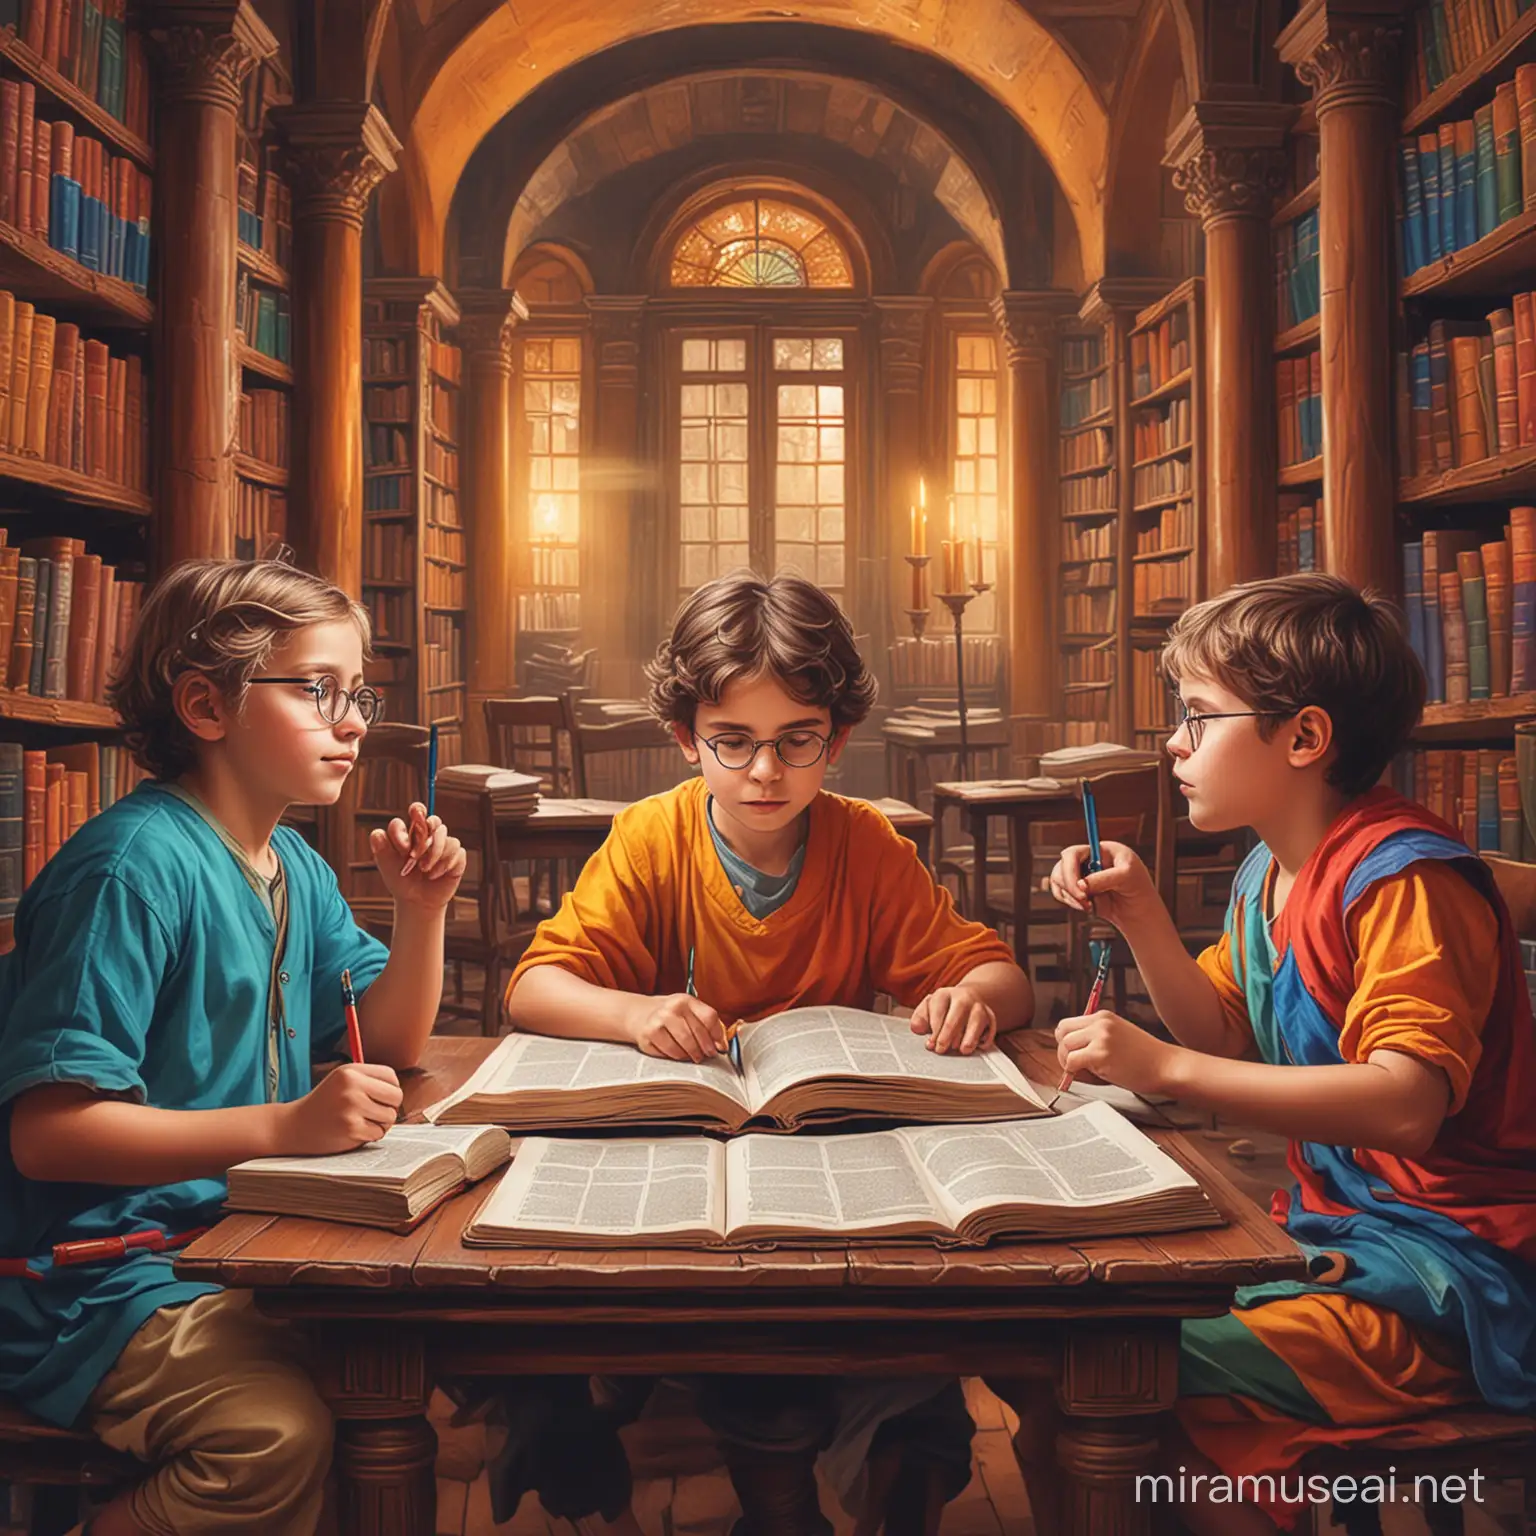 Rengarenk kadim bir kütüphanenin içinde oturmuş önlerinde kitap ve beş parmaklı ellerinin arasında incecik kalemler olan ve bir elleri masanın kitapları üzerinde diğer elleri başlarında düşünen filozof çocukların olduğu canlı, parlak bir illustrasyon görsel çiz
